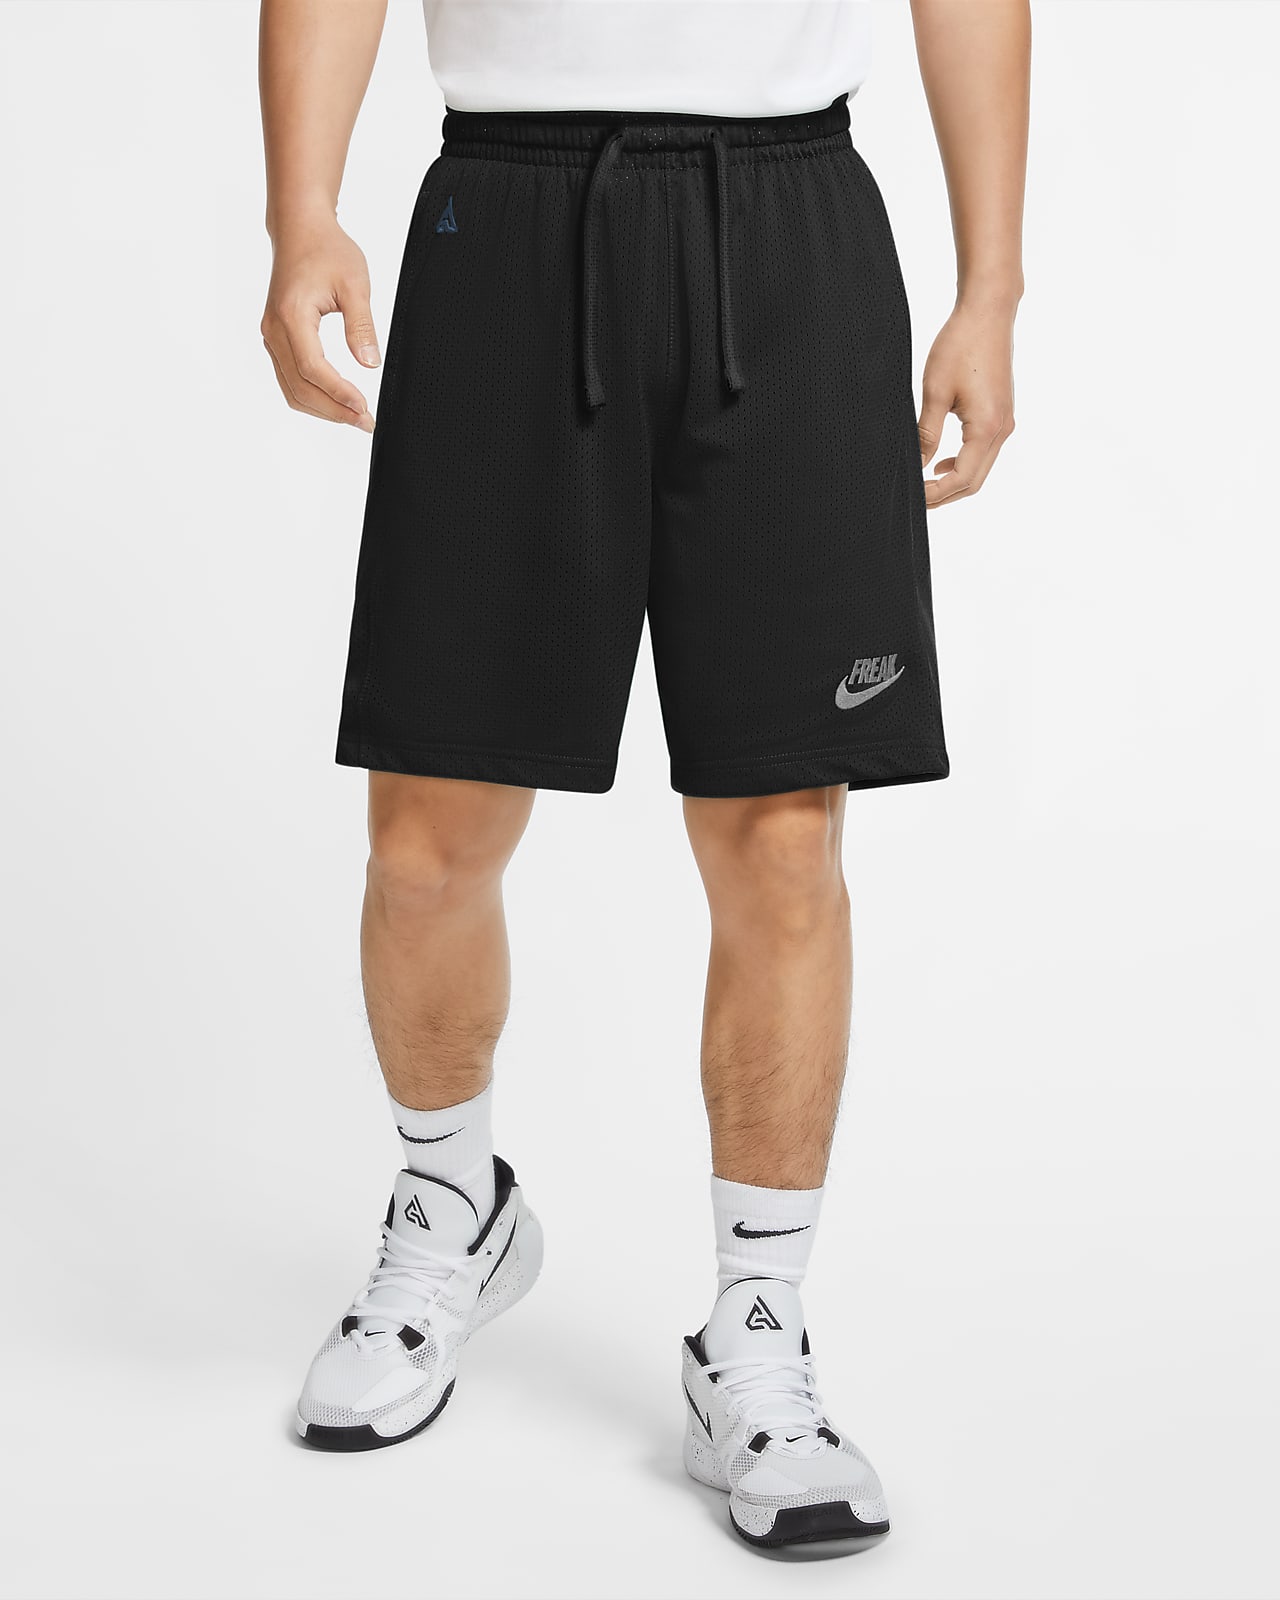 Giannis Men's Basketball Shorts. Nike.com